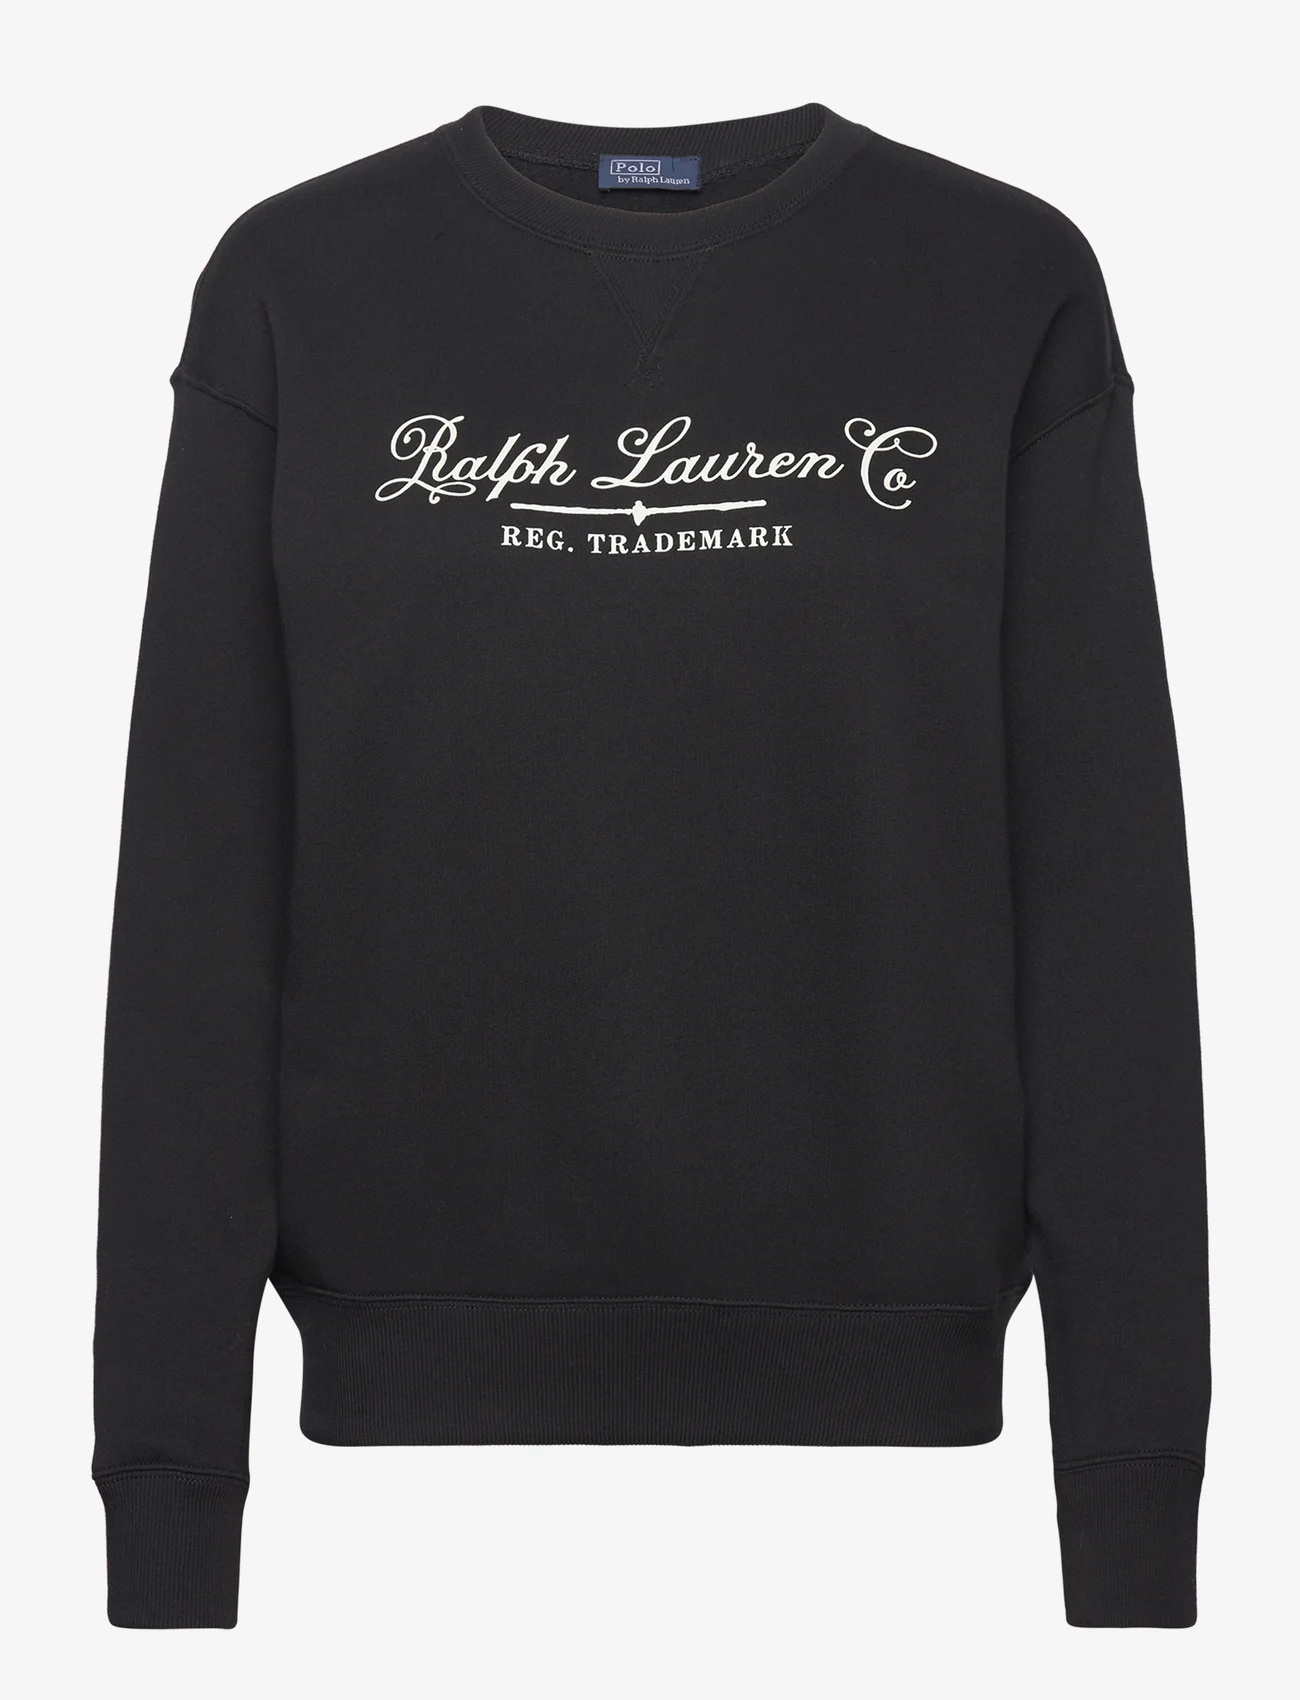 Polo Ralph Lauren - Logo Cotton Fleece Pullover - džemperiai - polo black - 0